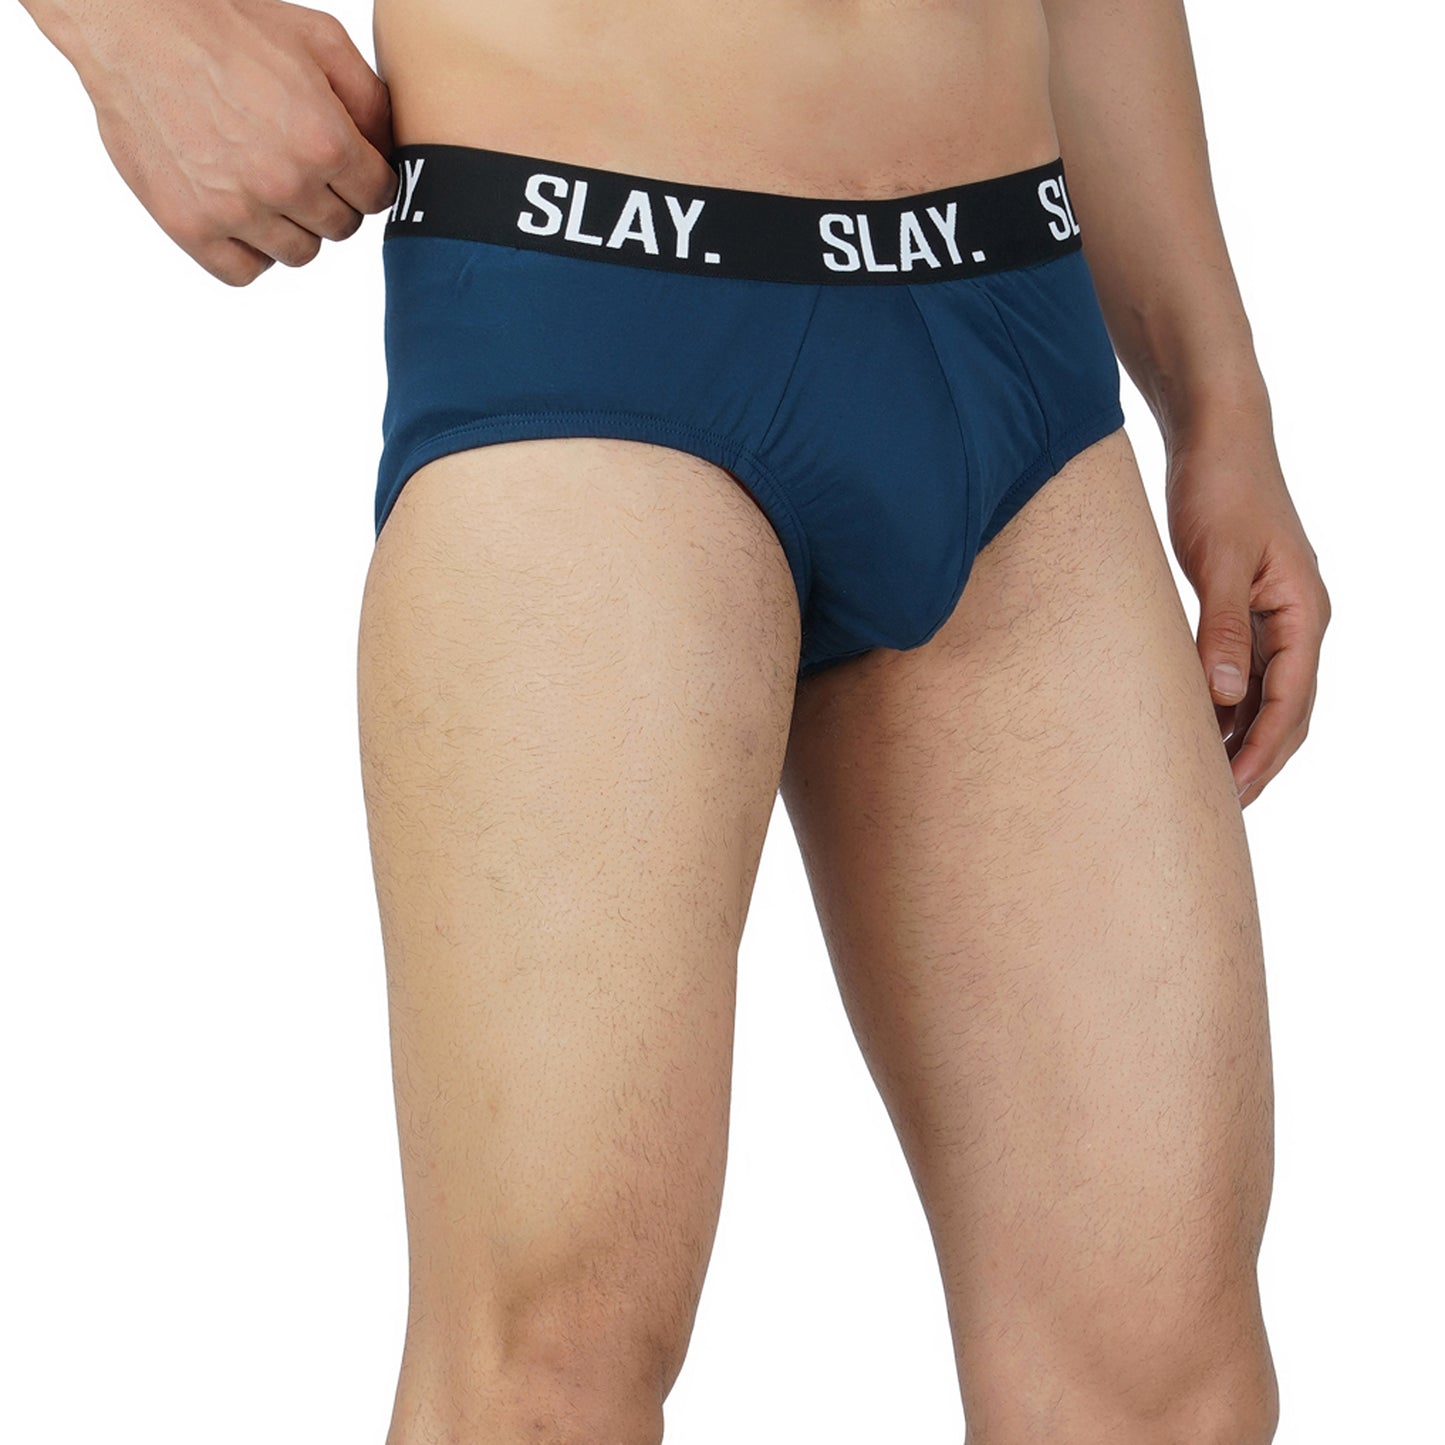 SLAY. Men's Blue Underwear Cotton Briefs